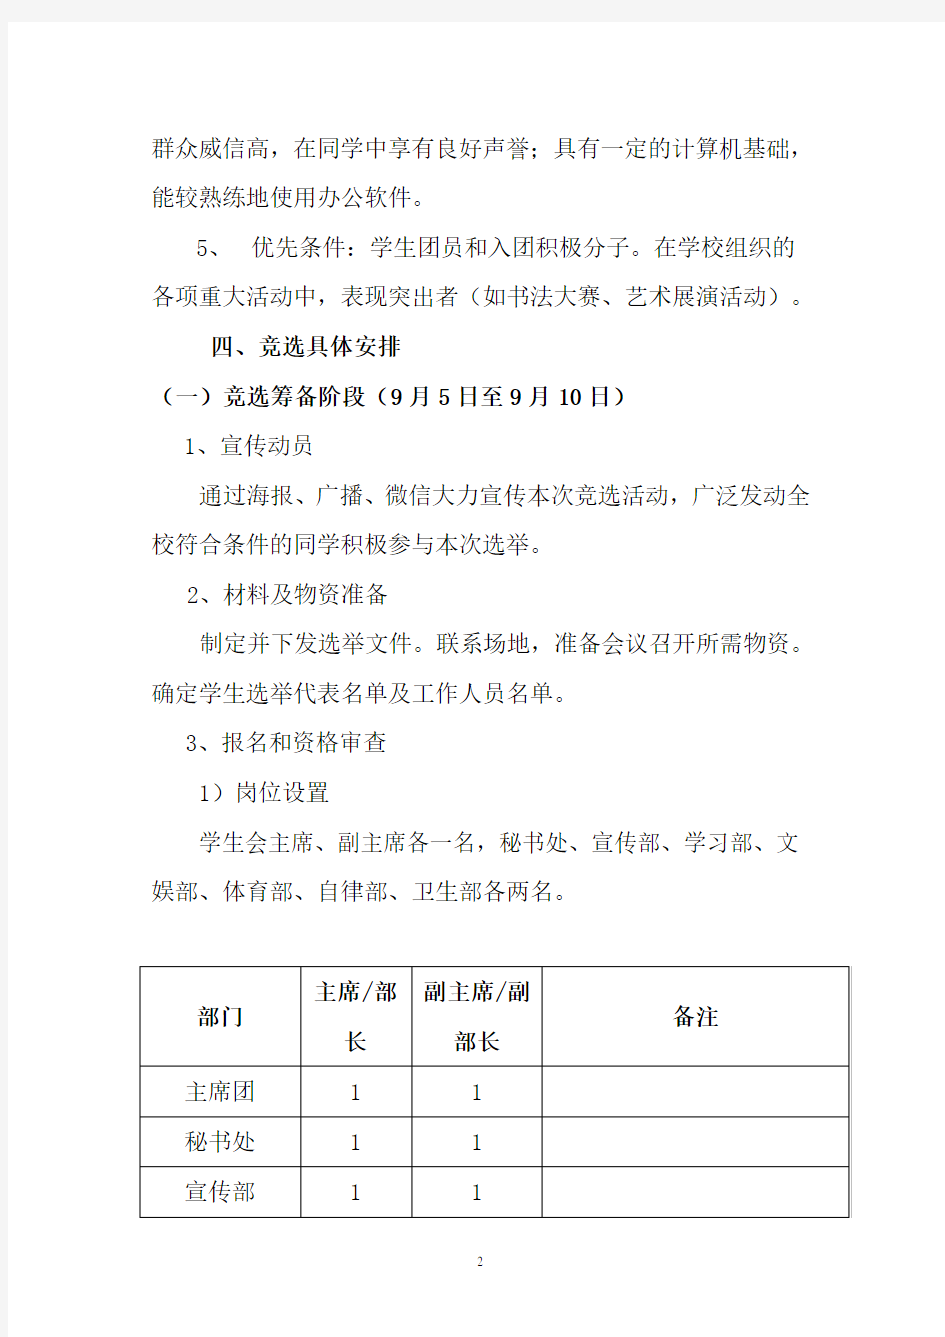 学生会换届选举方案(2020年整理).pdf